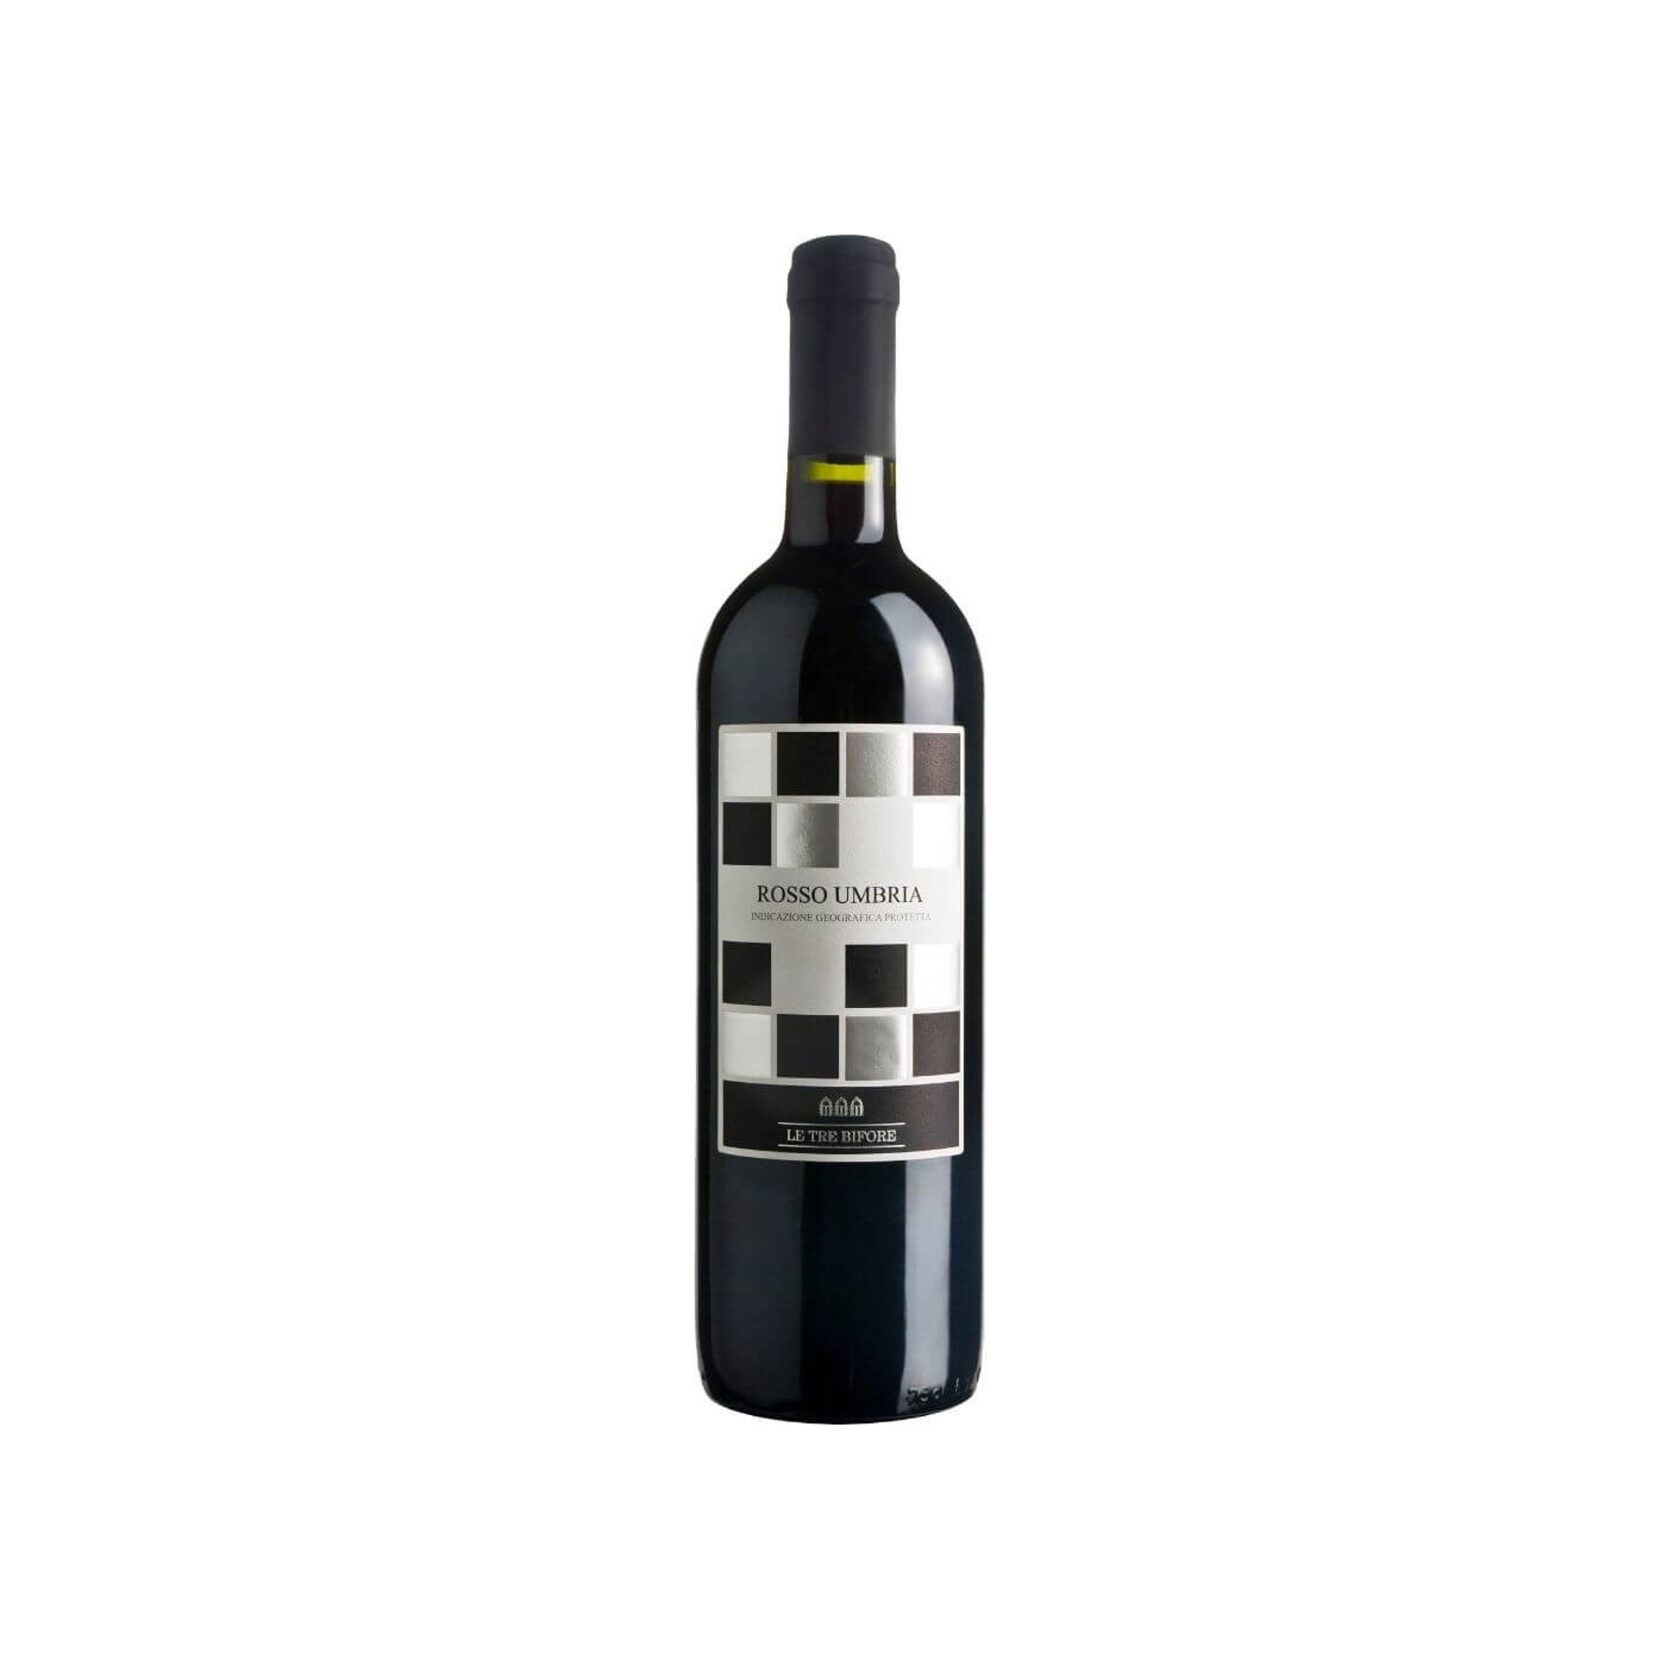 La vin. Rosso Umbria вино 2018. Вино Умбрия красное сухое. Вино красное сух Випра Россо Умбрия 13,5% 0,75л. Вино Perriere.